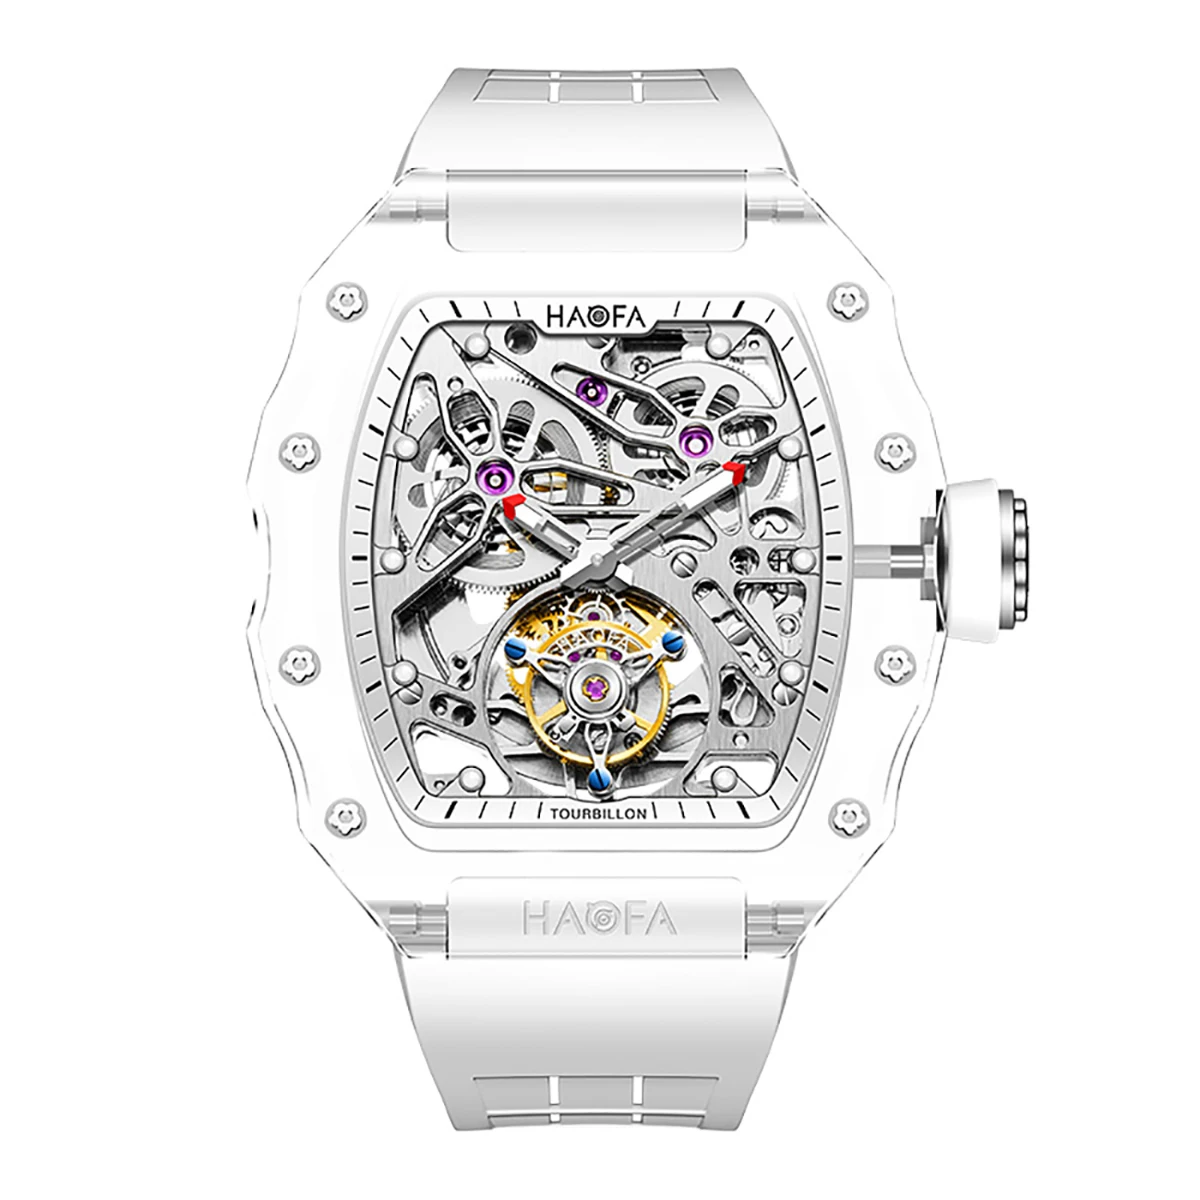 Haofa Total De Cristal Transparente Esse Relógio De Luxo Esvaziamento Relógio Mecânico Automático Impermeável Luminosa Mens Watch 2201